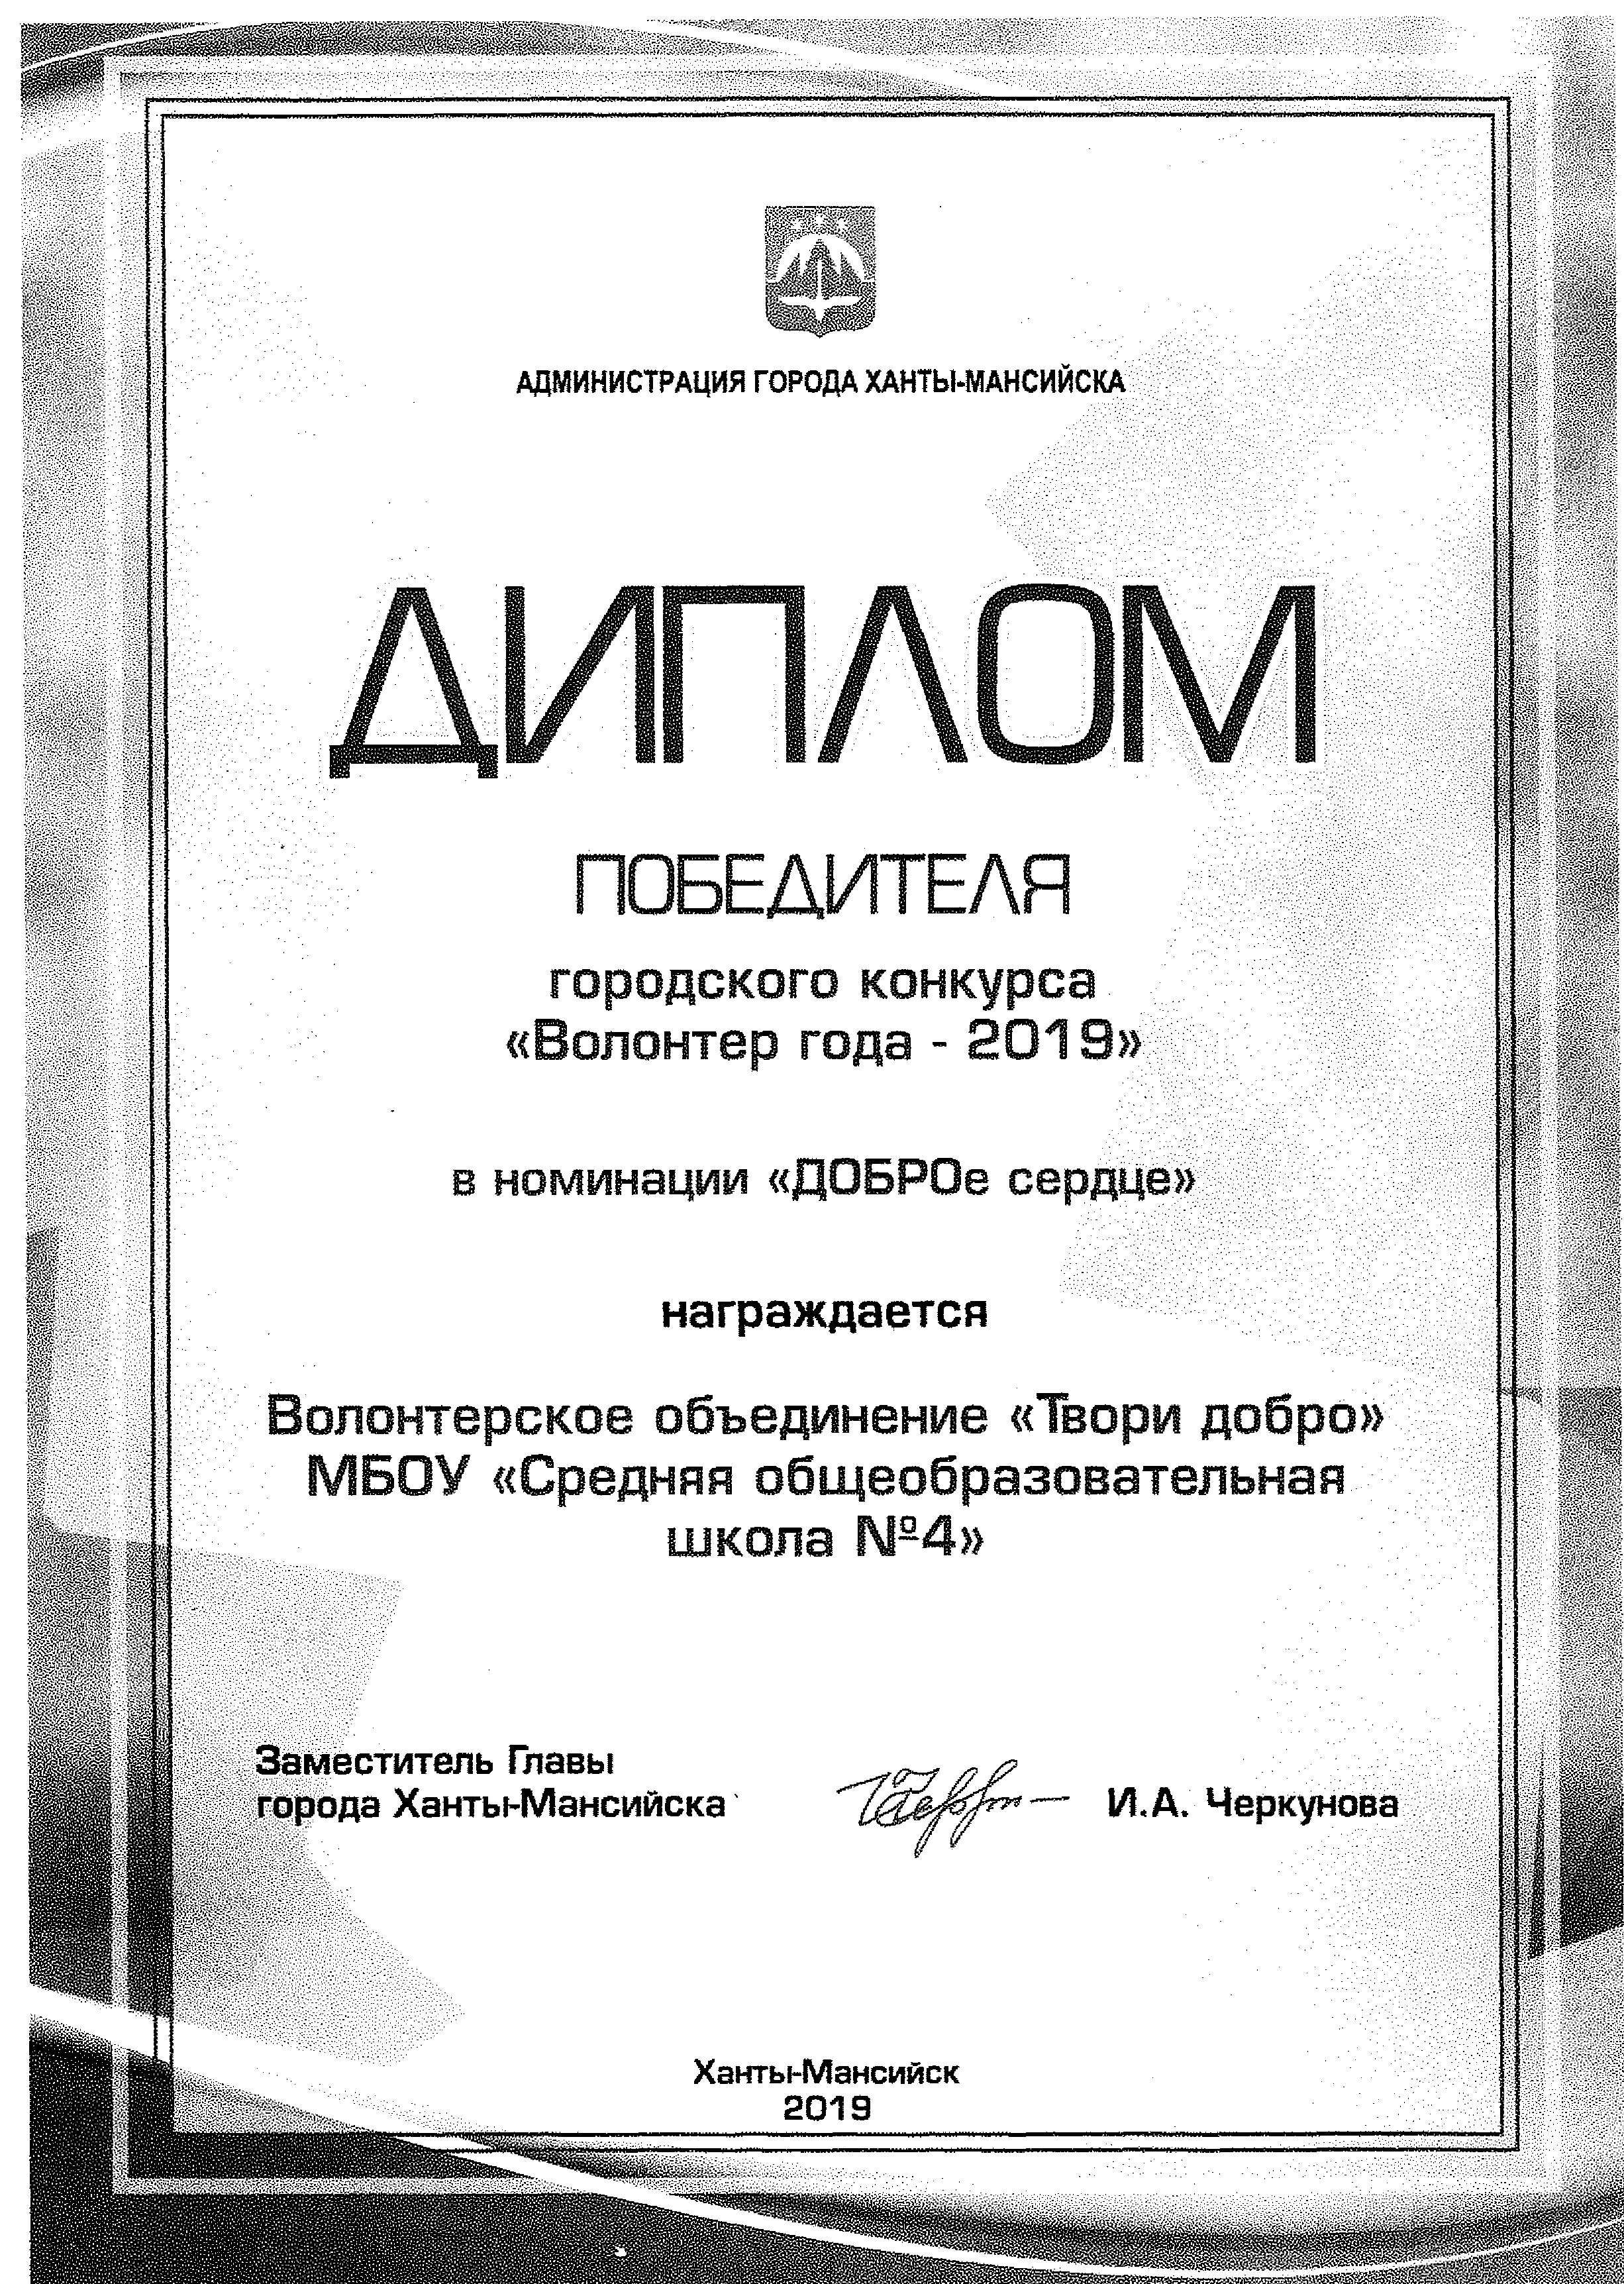 диплом победителя в городском конкурсе "Волонтер года - 2019"